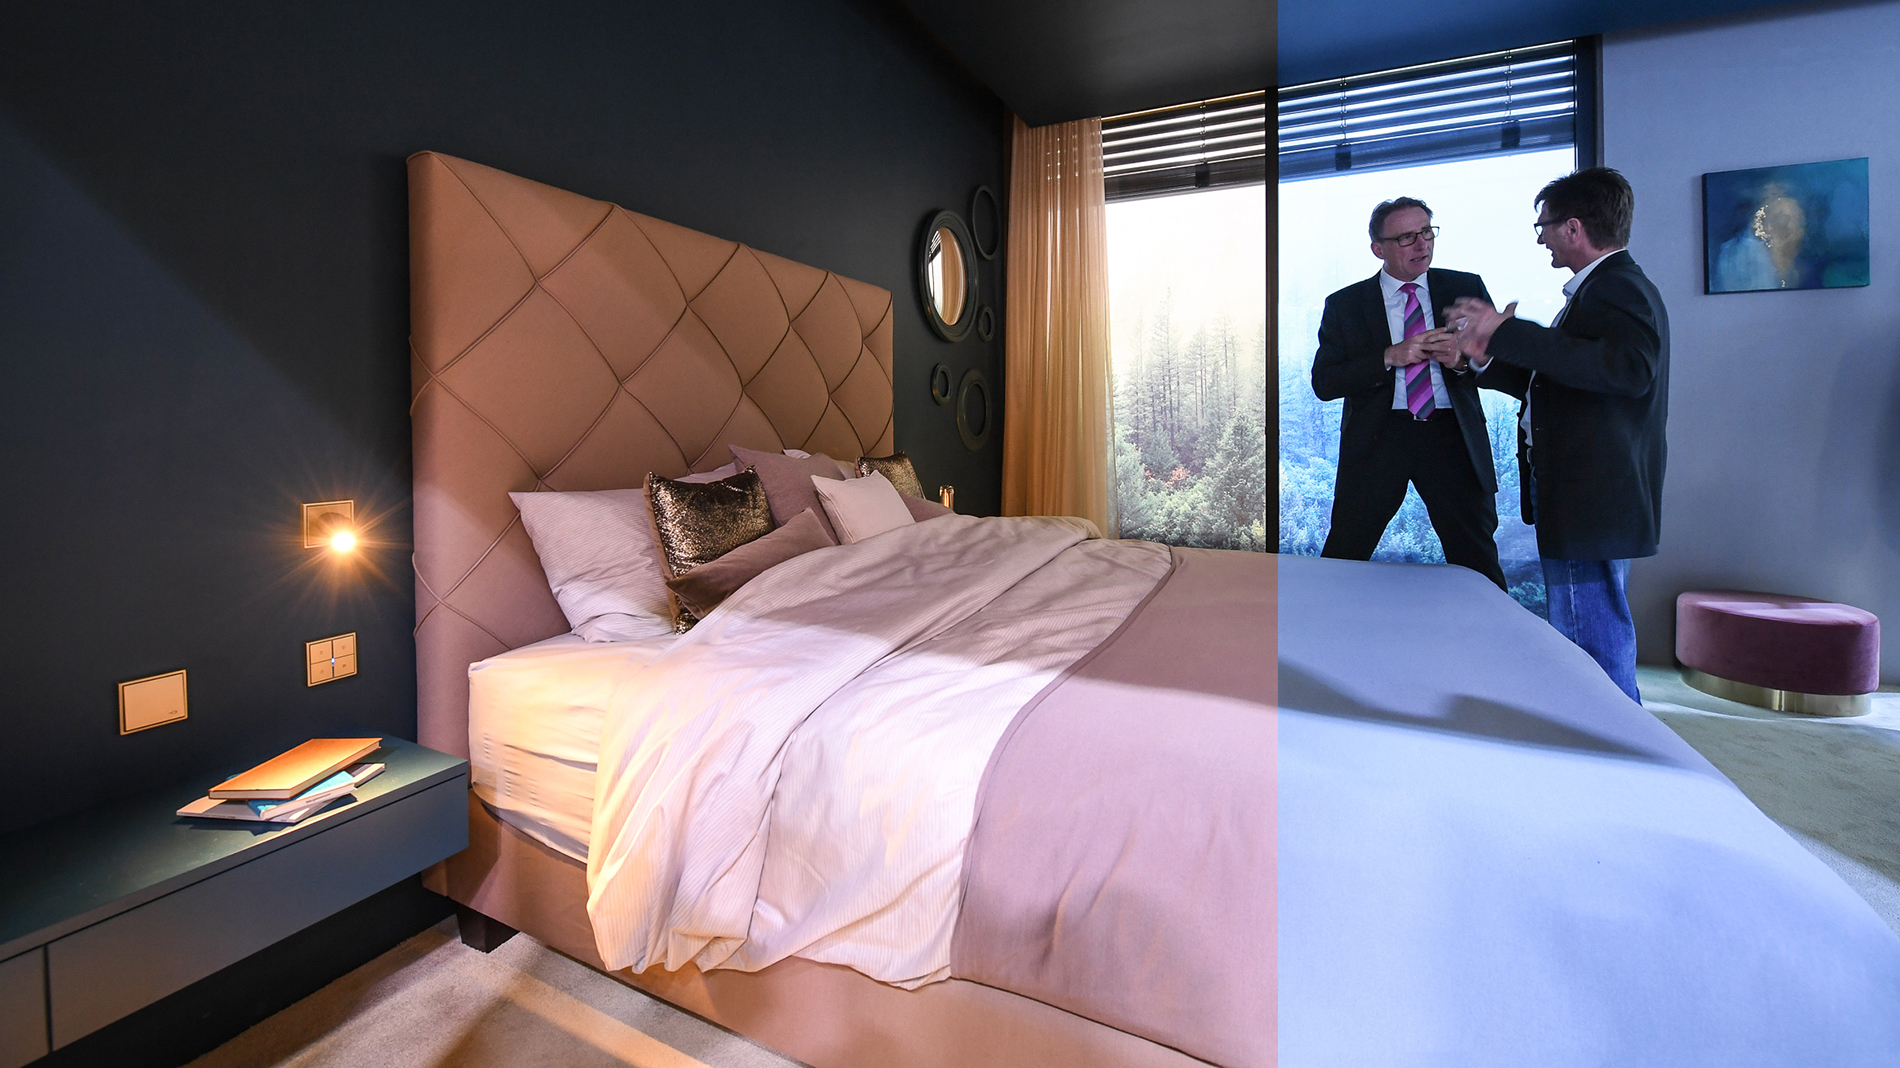 Auch im Hotelbereich sorgen HCL-Konzepte für eine dem Tageslicht ähnliche Atmosphäre und beeinflussen das Wohlbefinden der Gäste. (Quelle: Messe Frankfurt / Pietro Sutera)